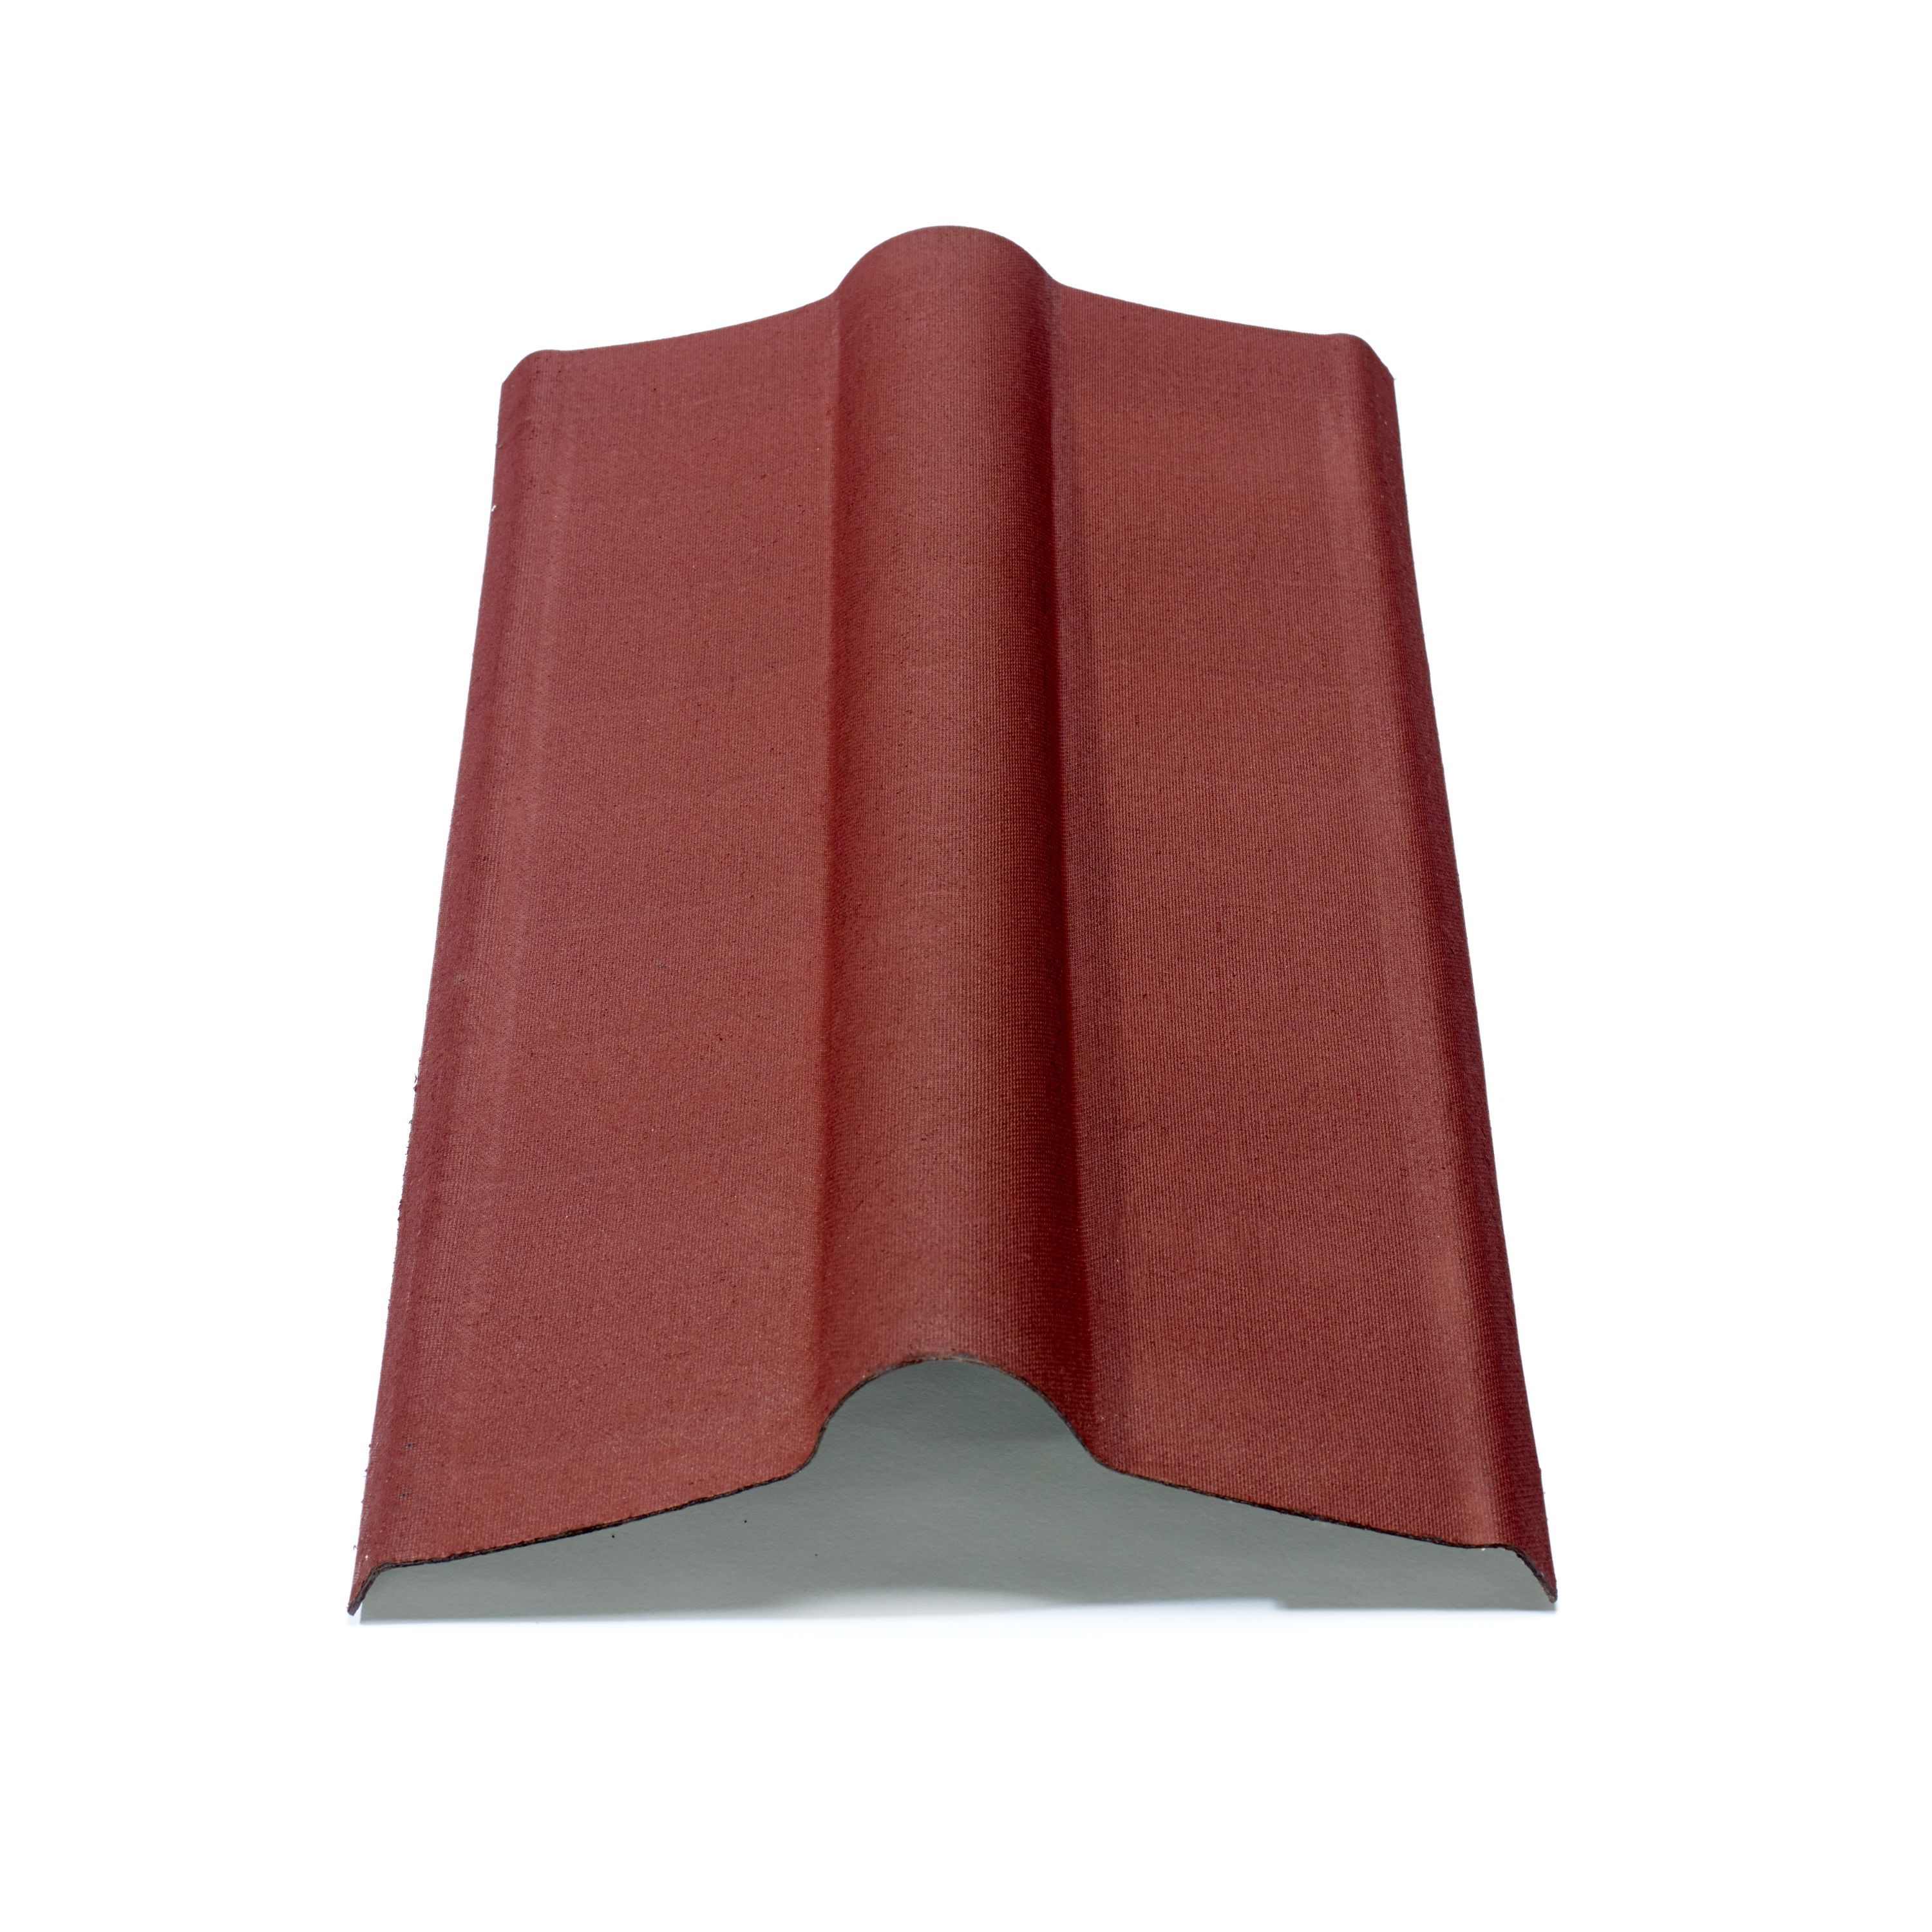 Onduline Red Bitumen Ridge piece (L)1000mm (W)420mm